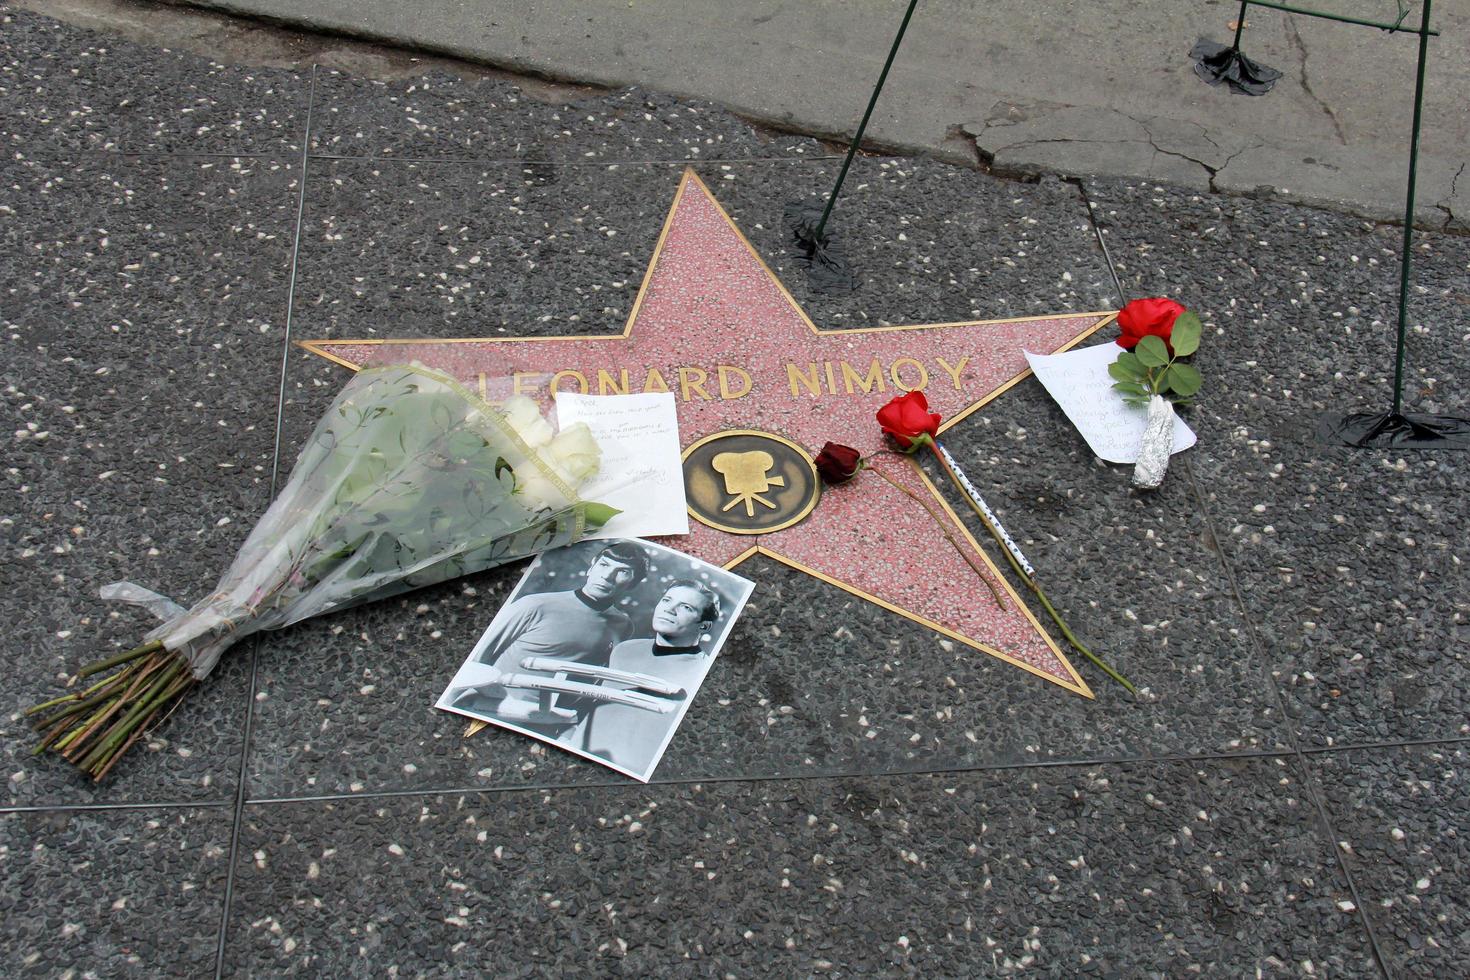 los angeles, 27 febbraio - corona commemorativa presso la stella di leonard nimoy sulla hollywood walk of fame all'hollywood blvd il 27 febbraio 2015 a los angeles, ca foto